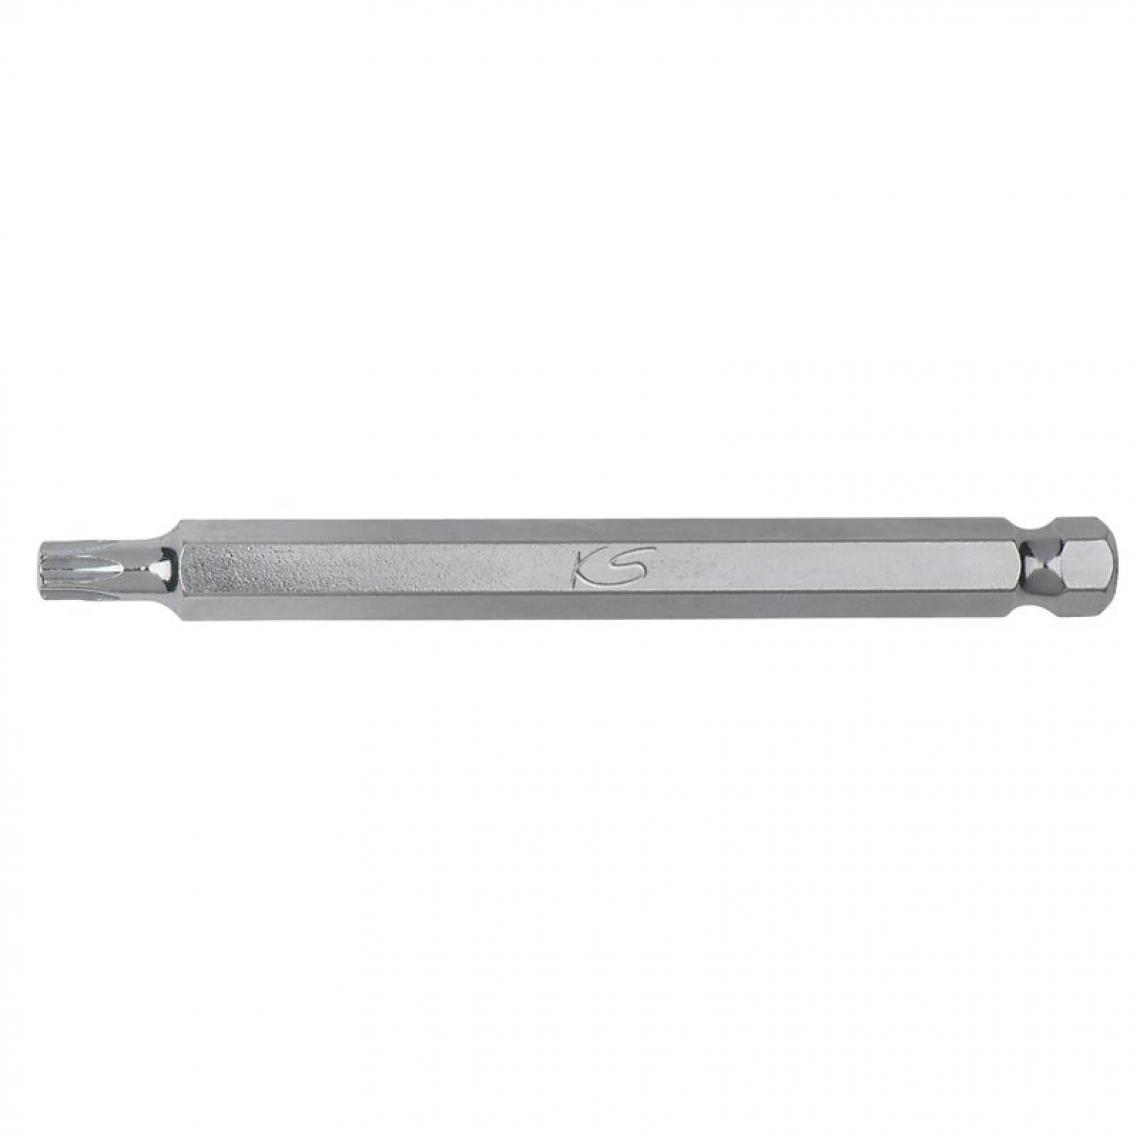 Ks Tools - Embout de vissage KS TORX 40 - entrainement 10 mm, longueur120 mm, Du coffret 91 - Accessoires meulage